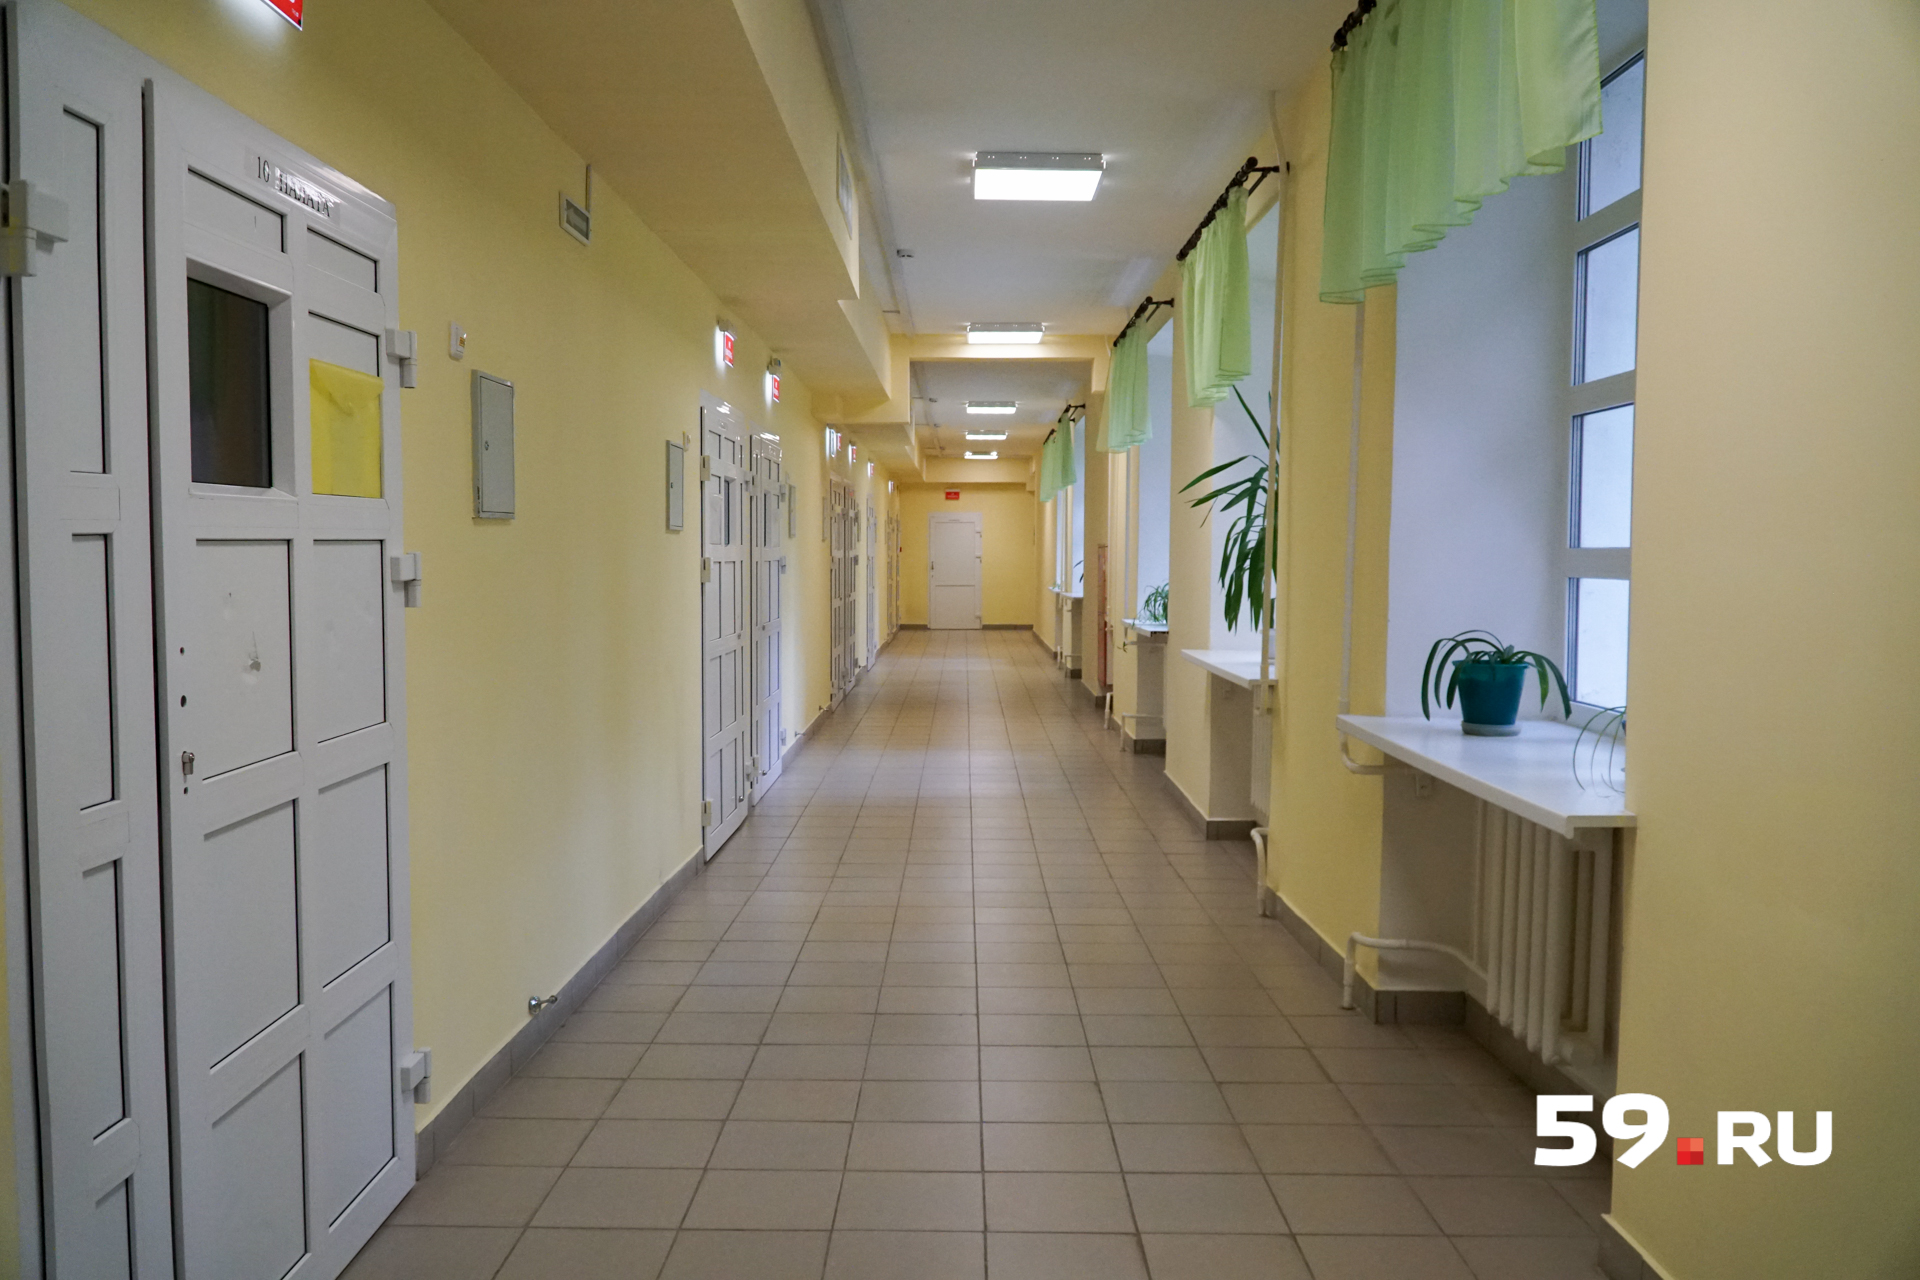 Так выглядят коридоры в детском отделении краевой психиатрической больницы